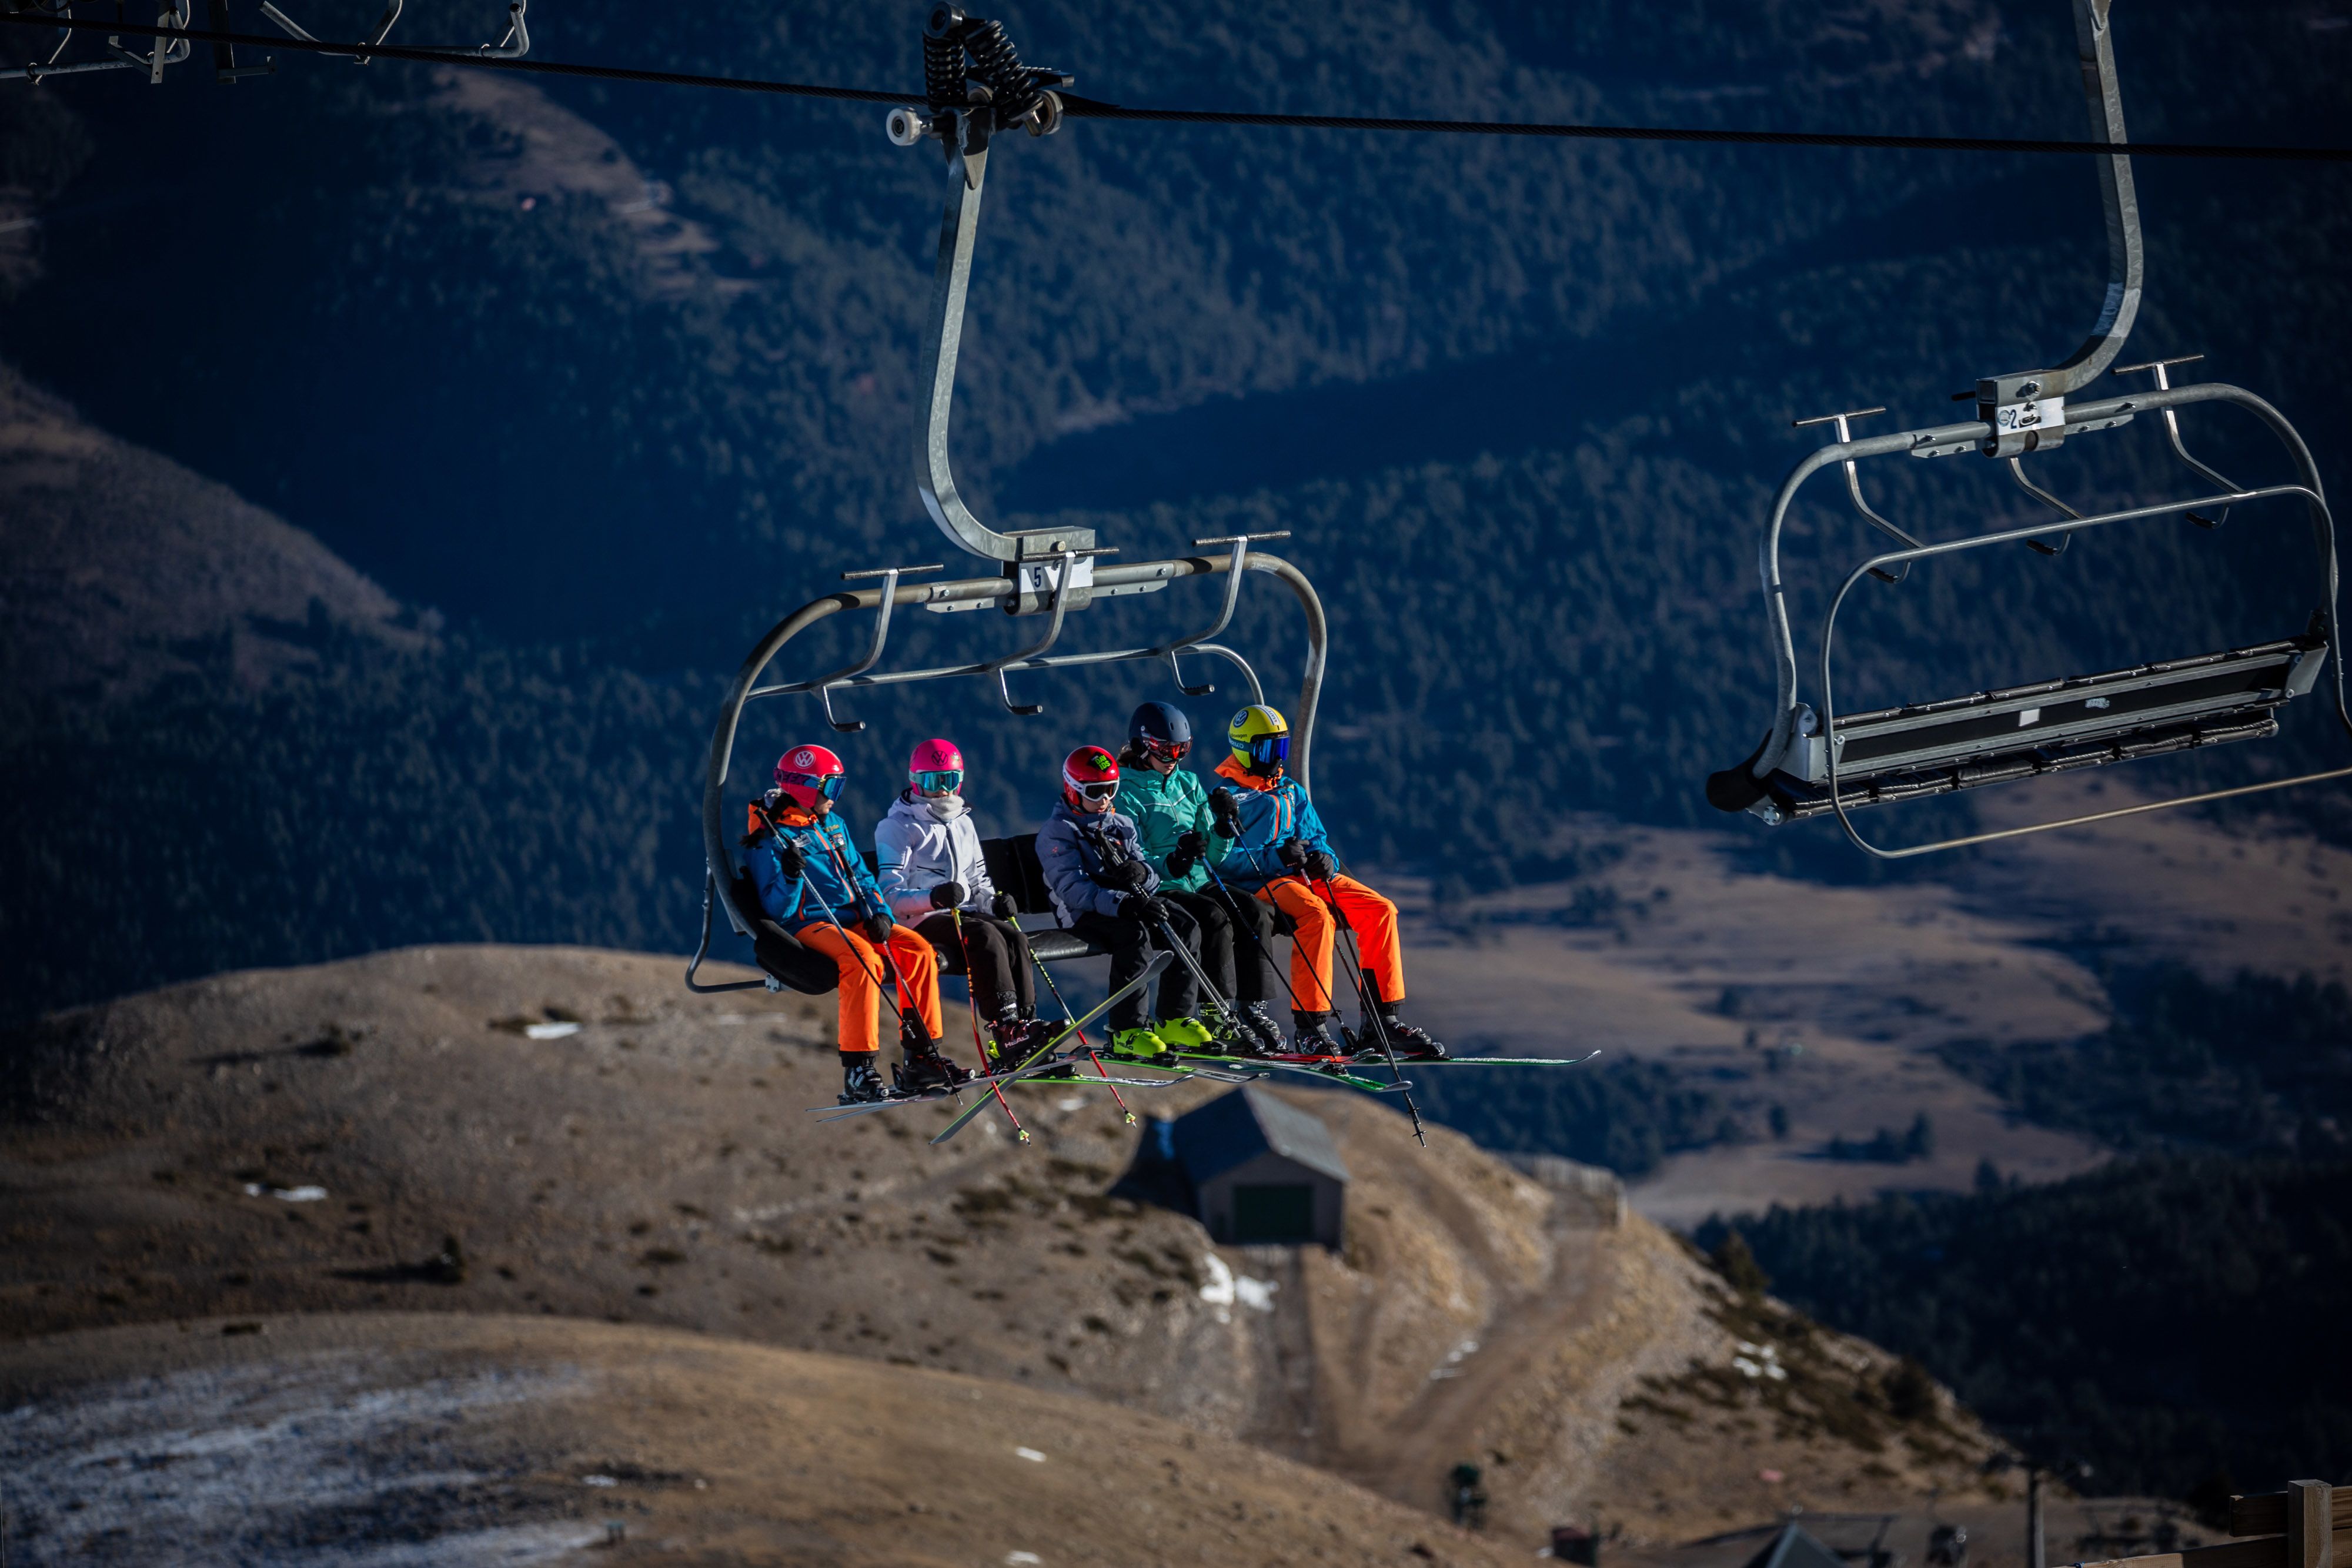 La nieve artificial ya no es suficiente: más de un tercio de las estaciones  de esquí tendrán que cerrar